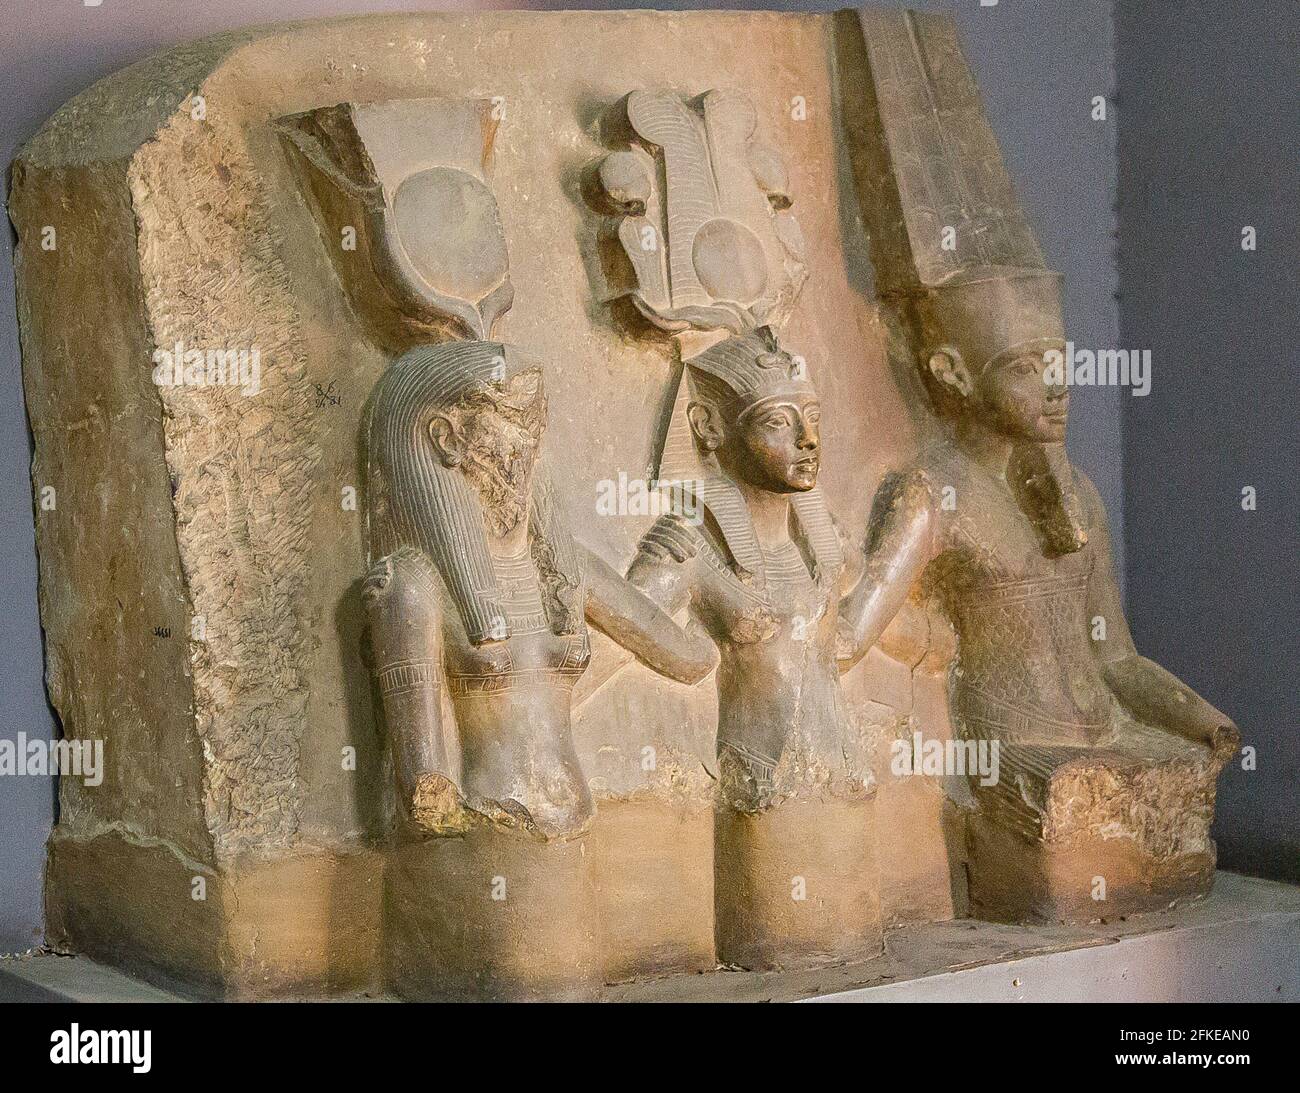 Égypte, le Caire, Musée égyptien, groupe de statue calcaire du roi Toutankhamon entre dieu Amon et la déesse Mut. De la cachette de Karnak. Banque D'Images